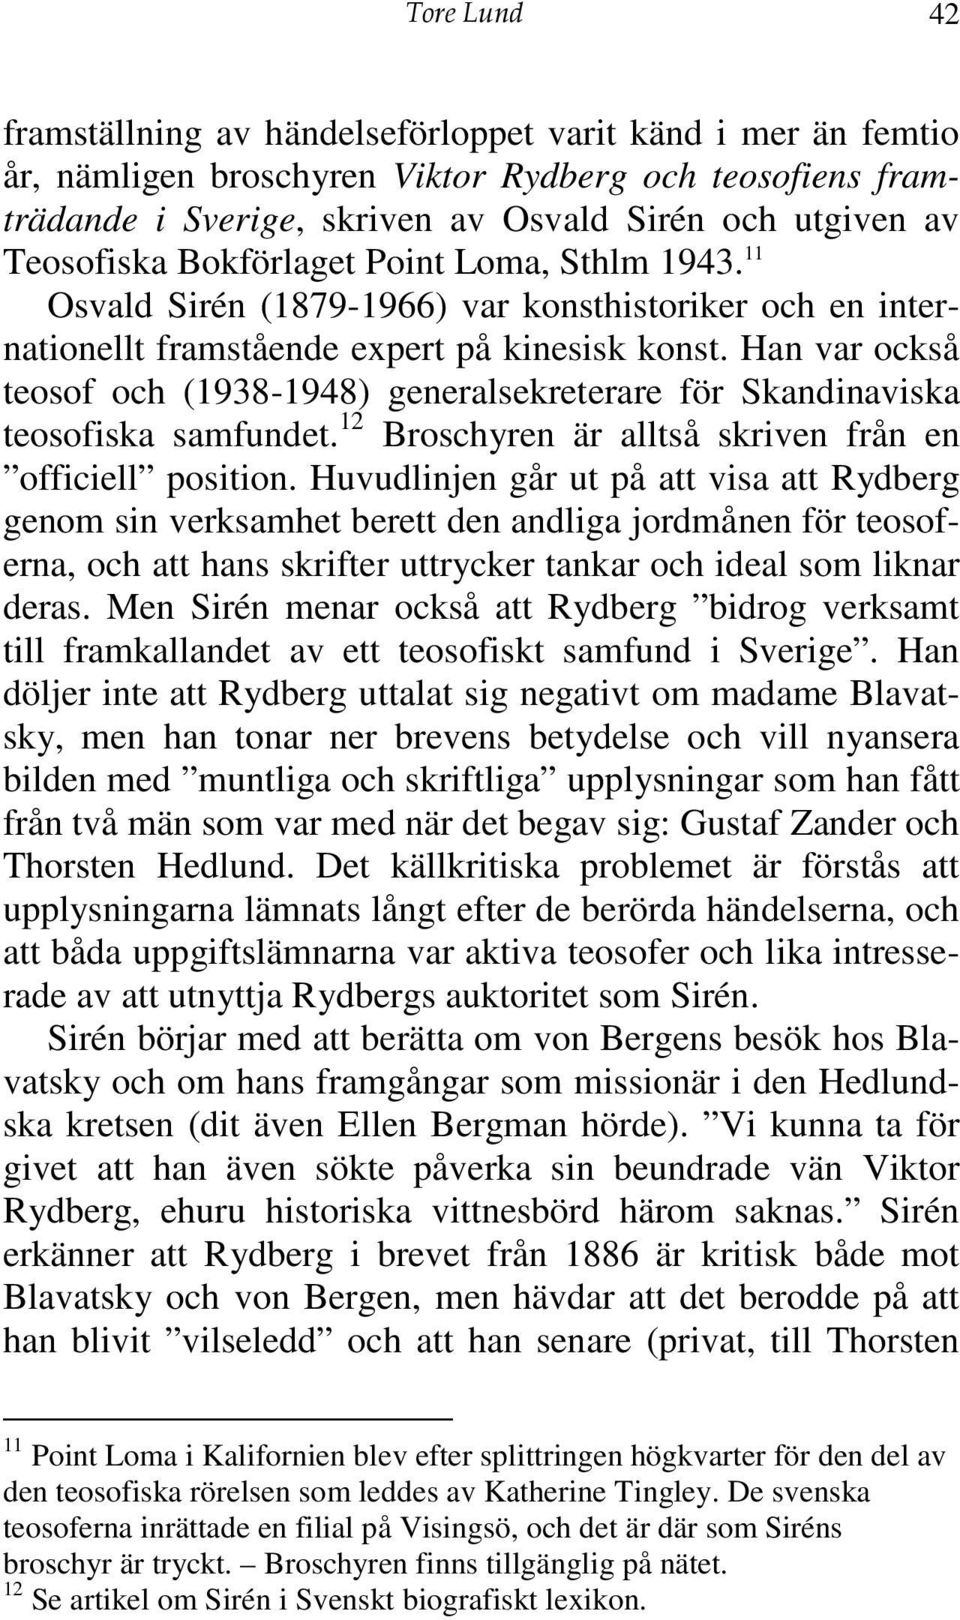 Han var också teosof och (1938-1948) generalsekreterare för Skandinaviska teosofiska samfundet. 12 Broschyren är alltså skriven från en officiell position.